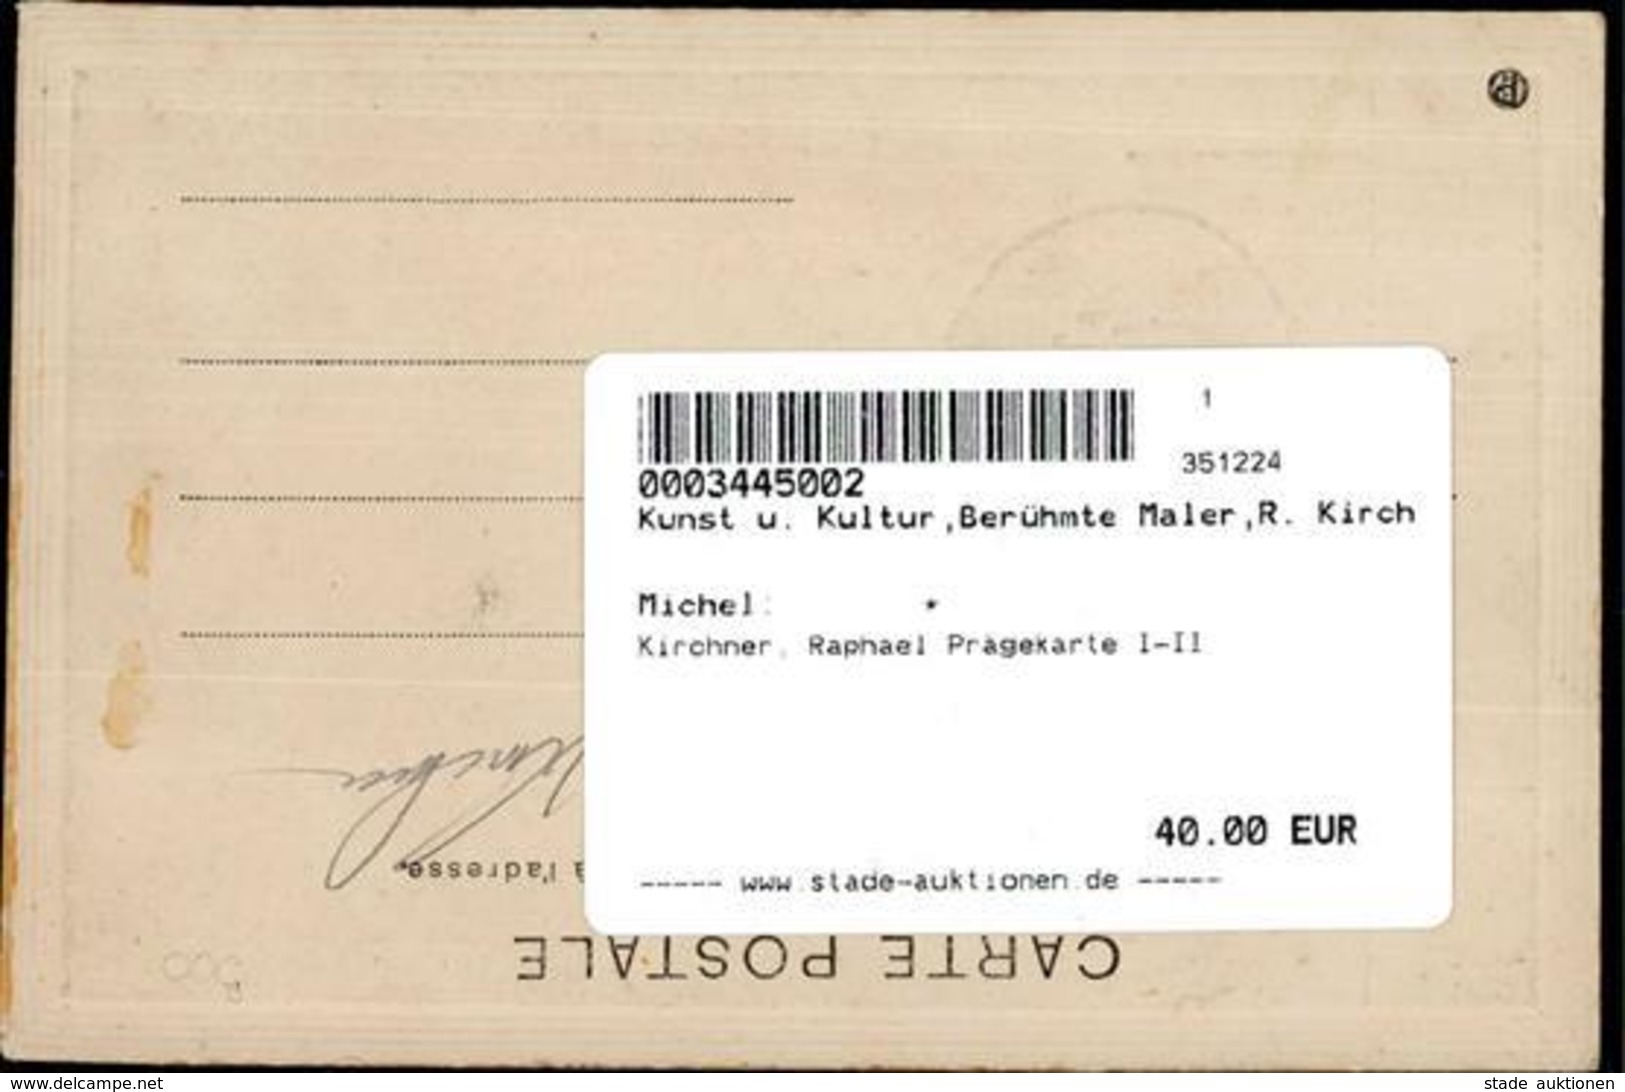 Kirchner, Raphael Prägekarte I-II - Kirchner, Raphael